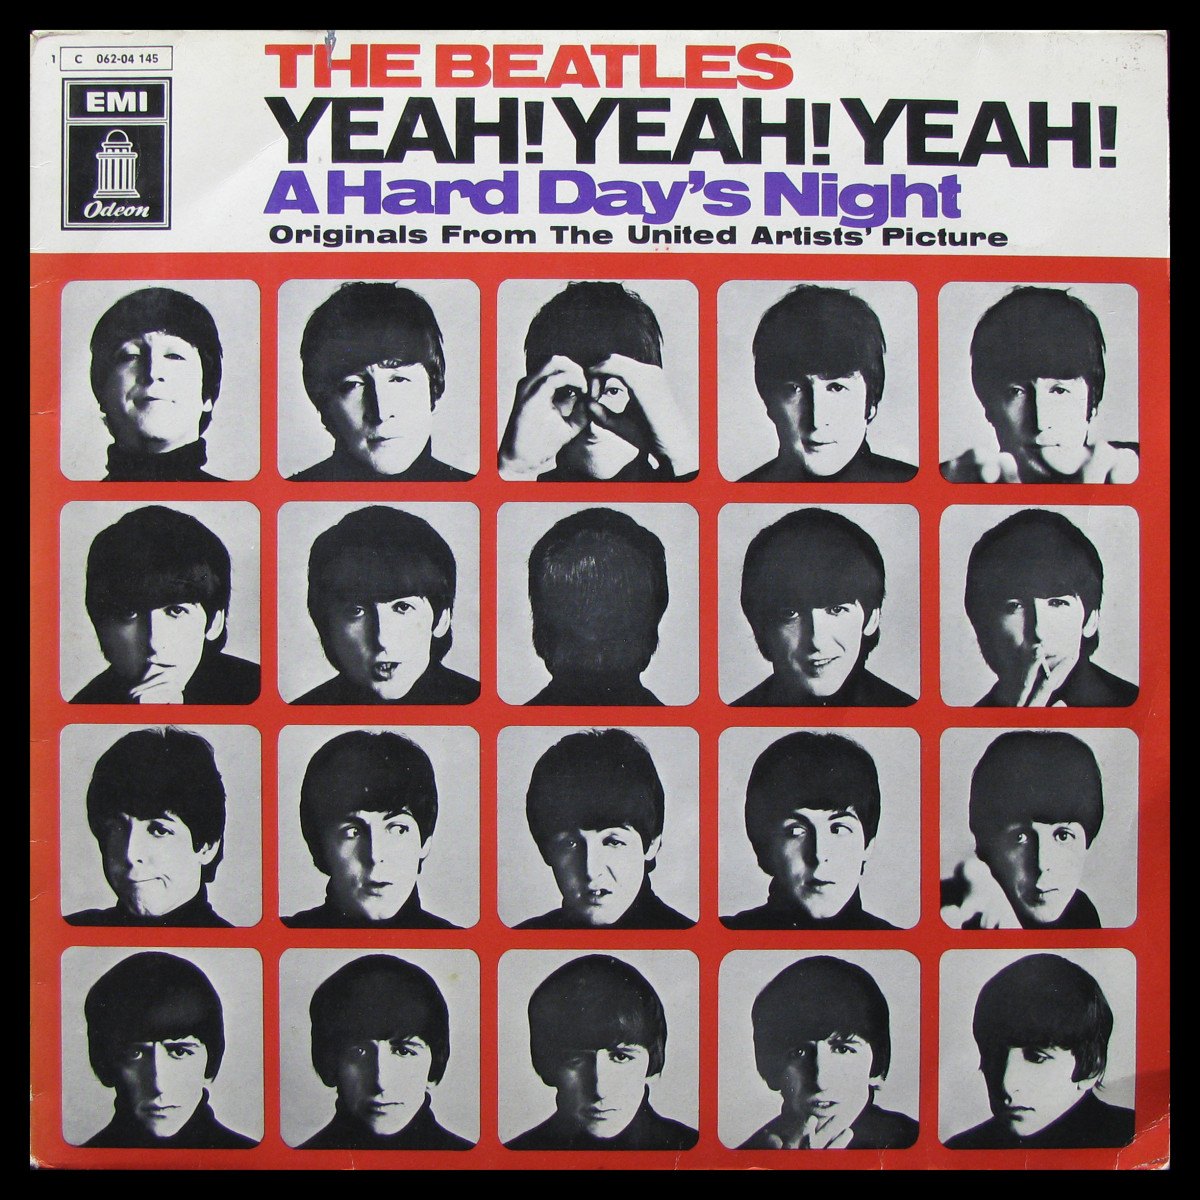 Yeah! Yeah! Yeah! (A Hard Day's Night)